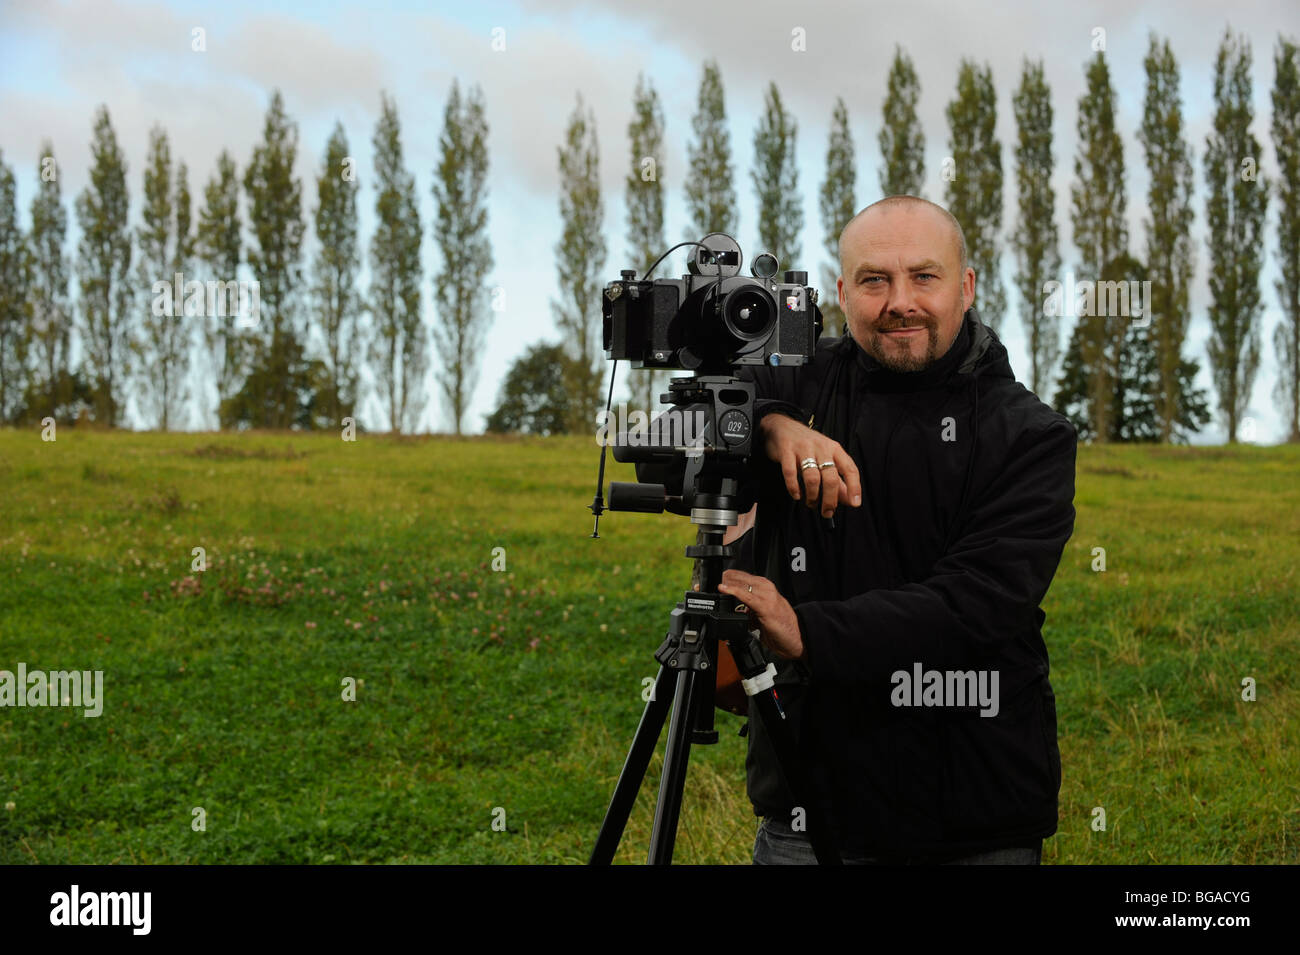 Landschaftsfotograf Tony Wainwright mit einer 6x17 Panoramakamera auf Stativ, die in East Sussex Fields arbeitet. Stockfoto